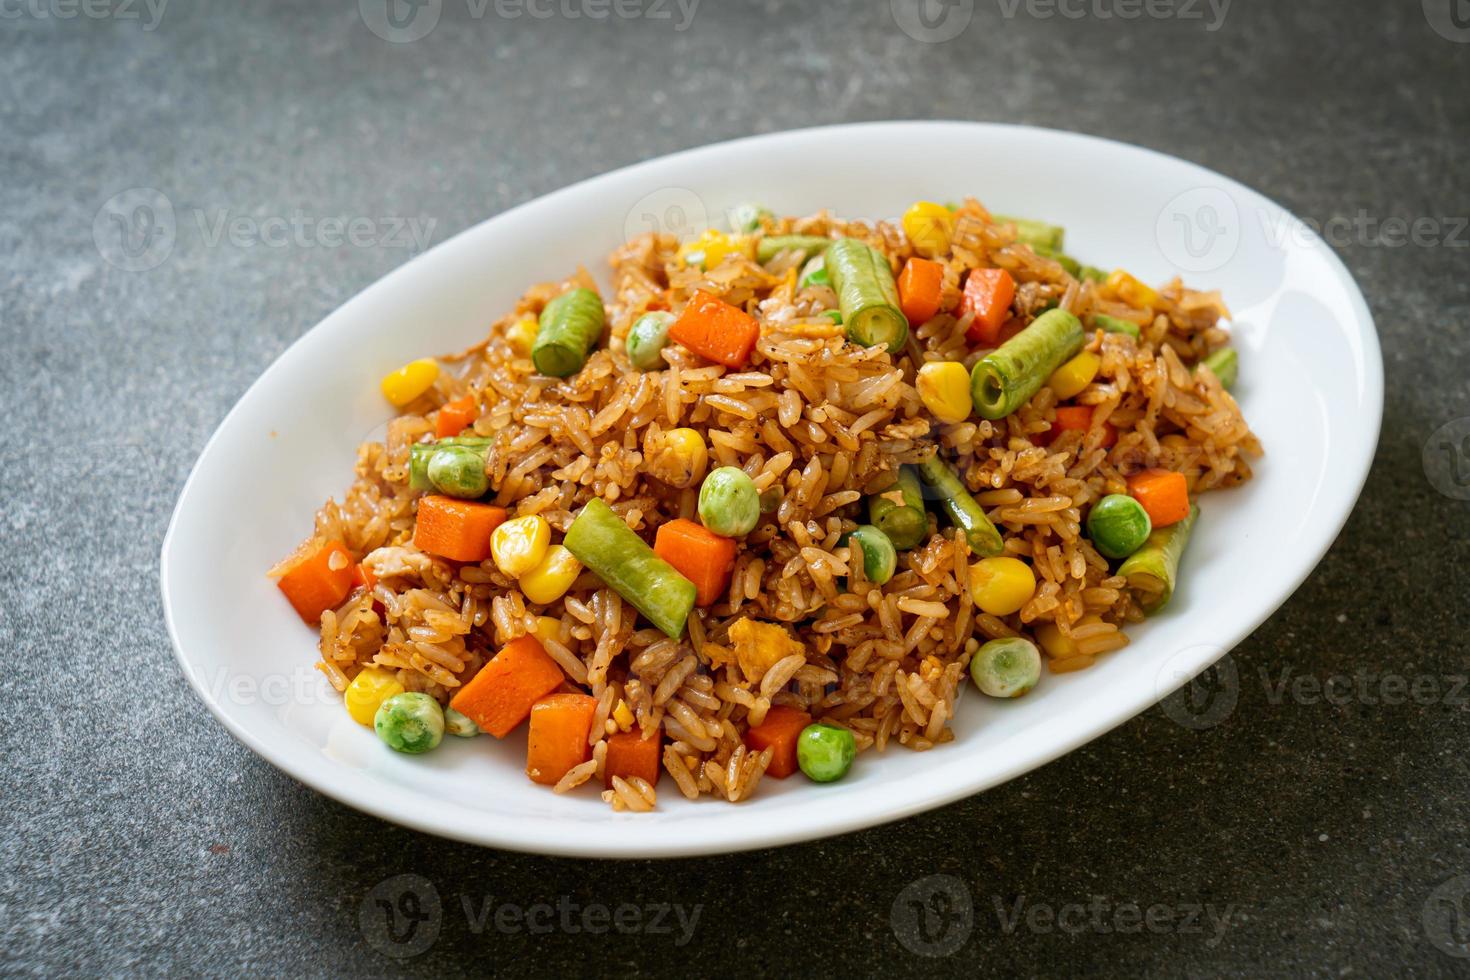 arroz frito con guisantes, zanahorias y maíz - estilo de comida vegetariana y saludable foto